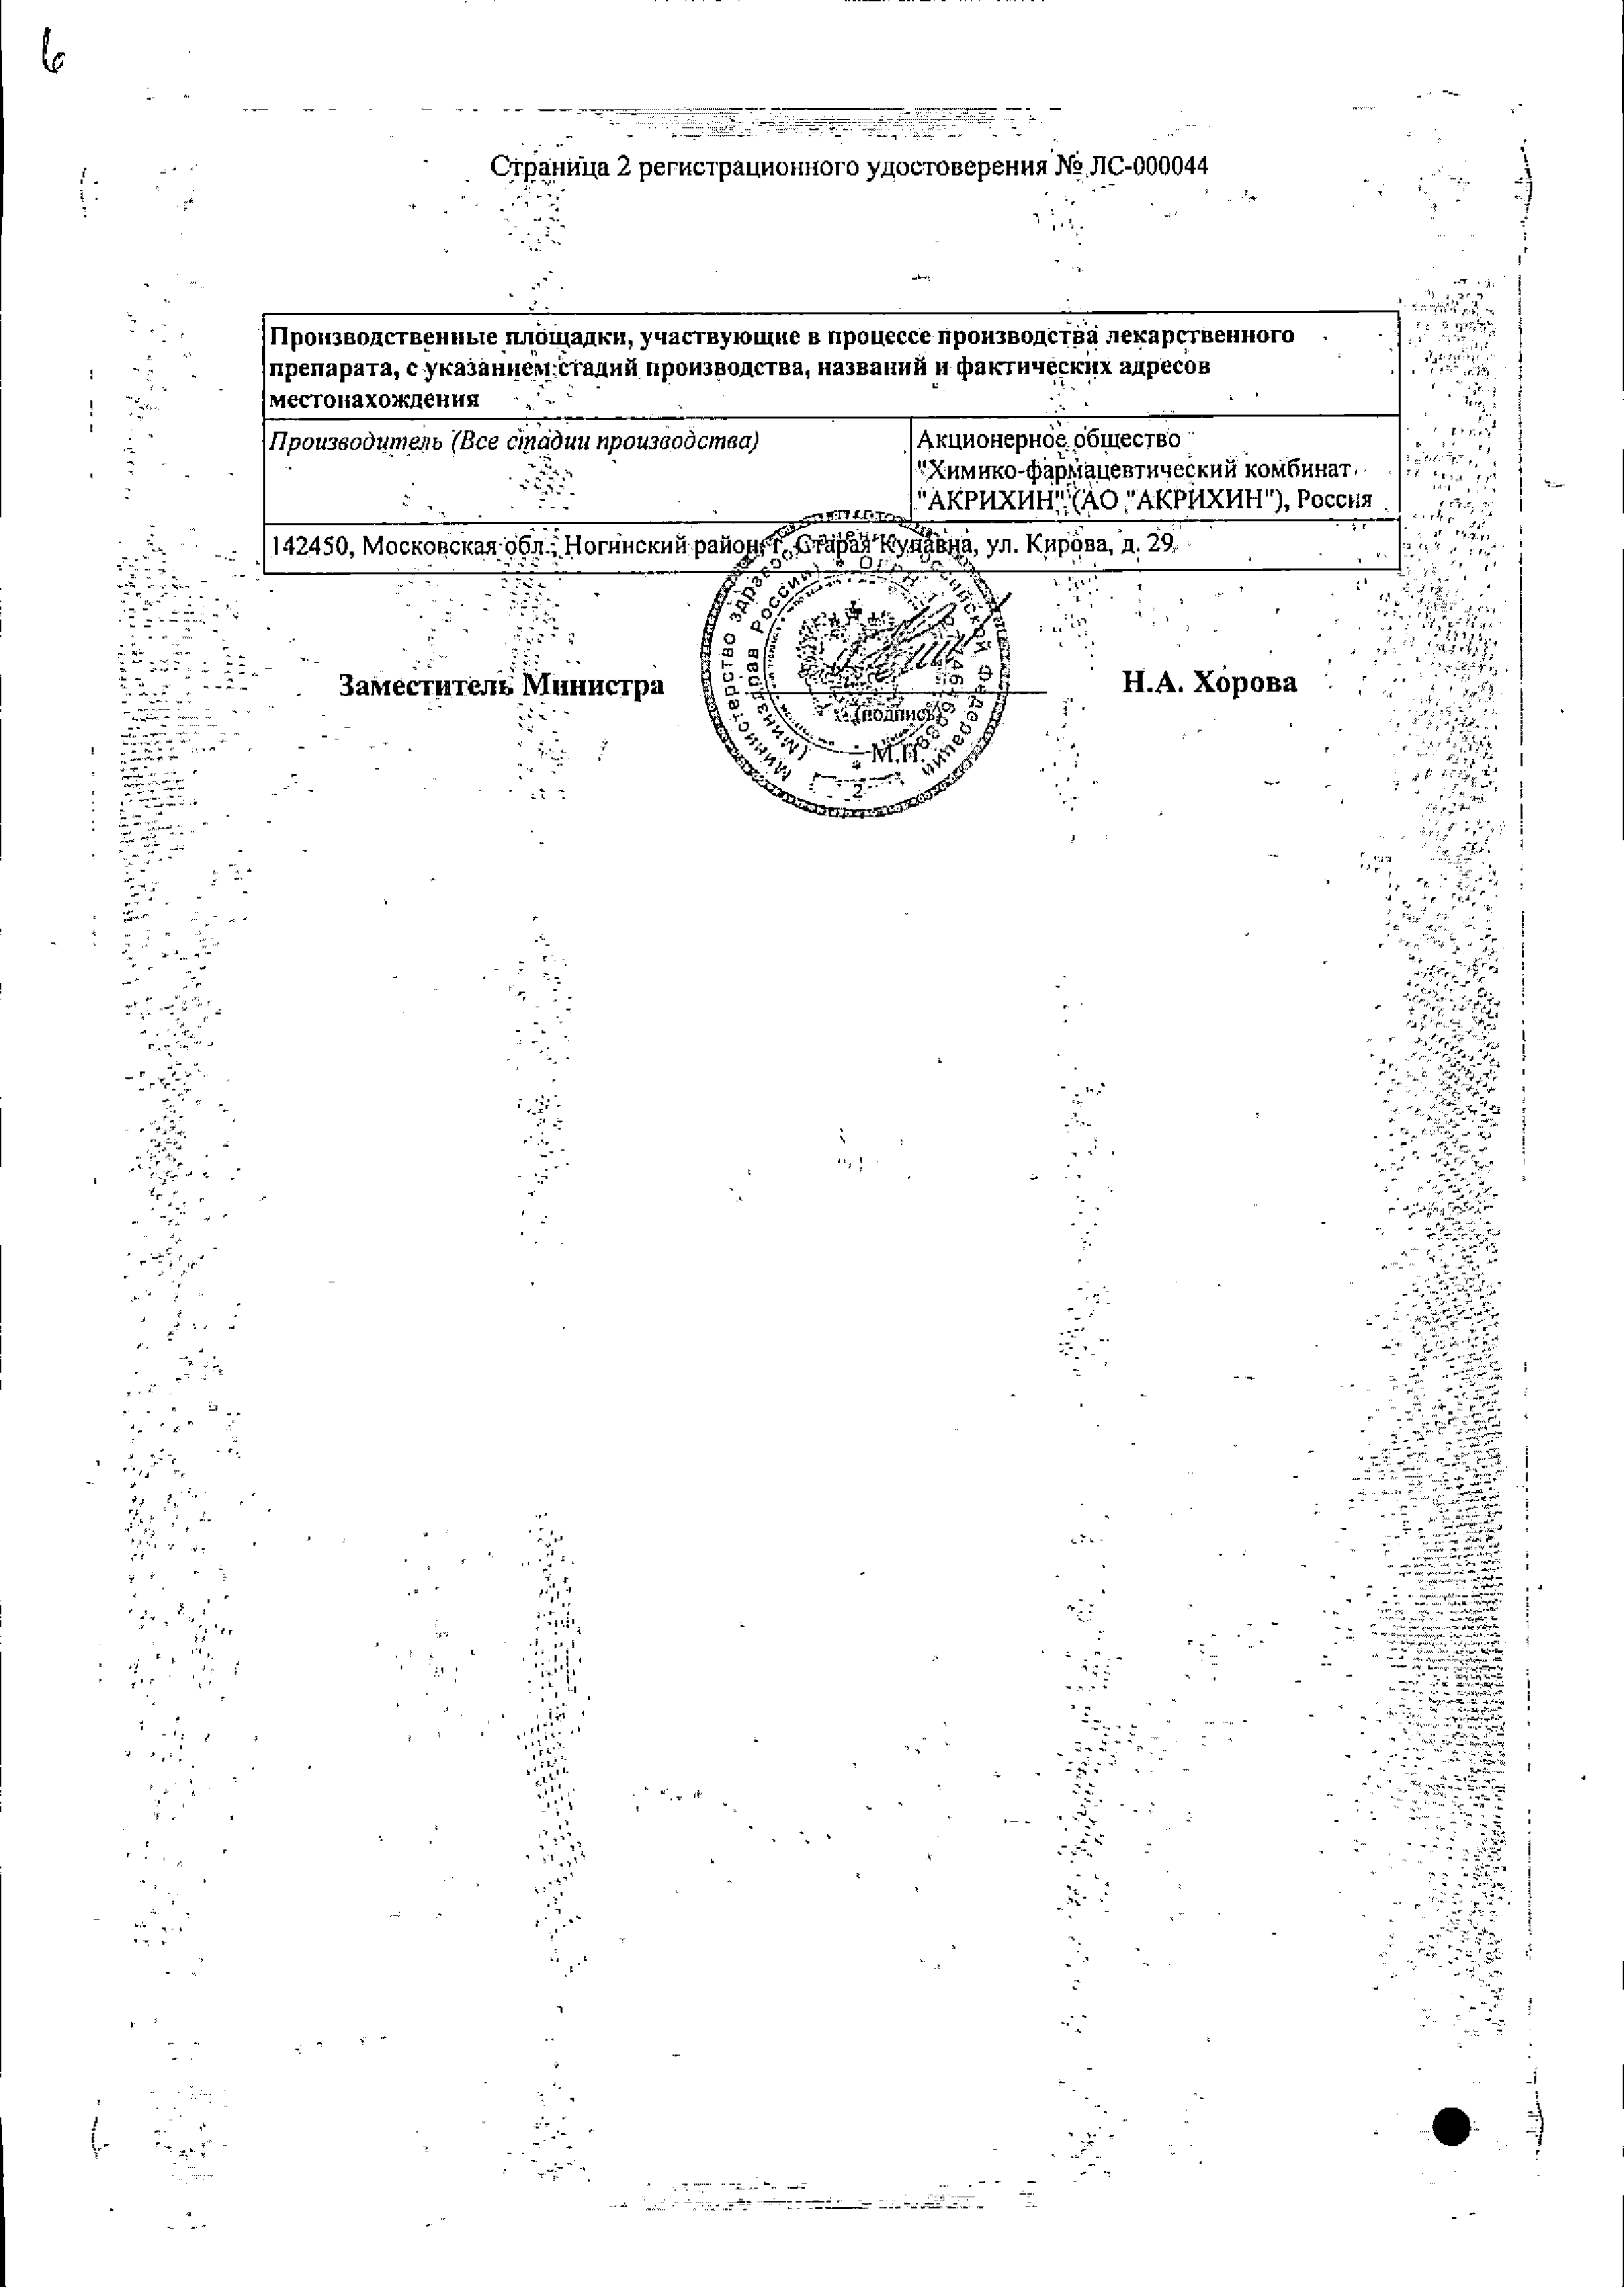 Ацикловир-Акрихин сертификат